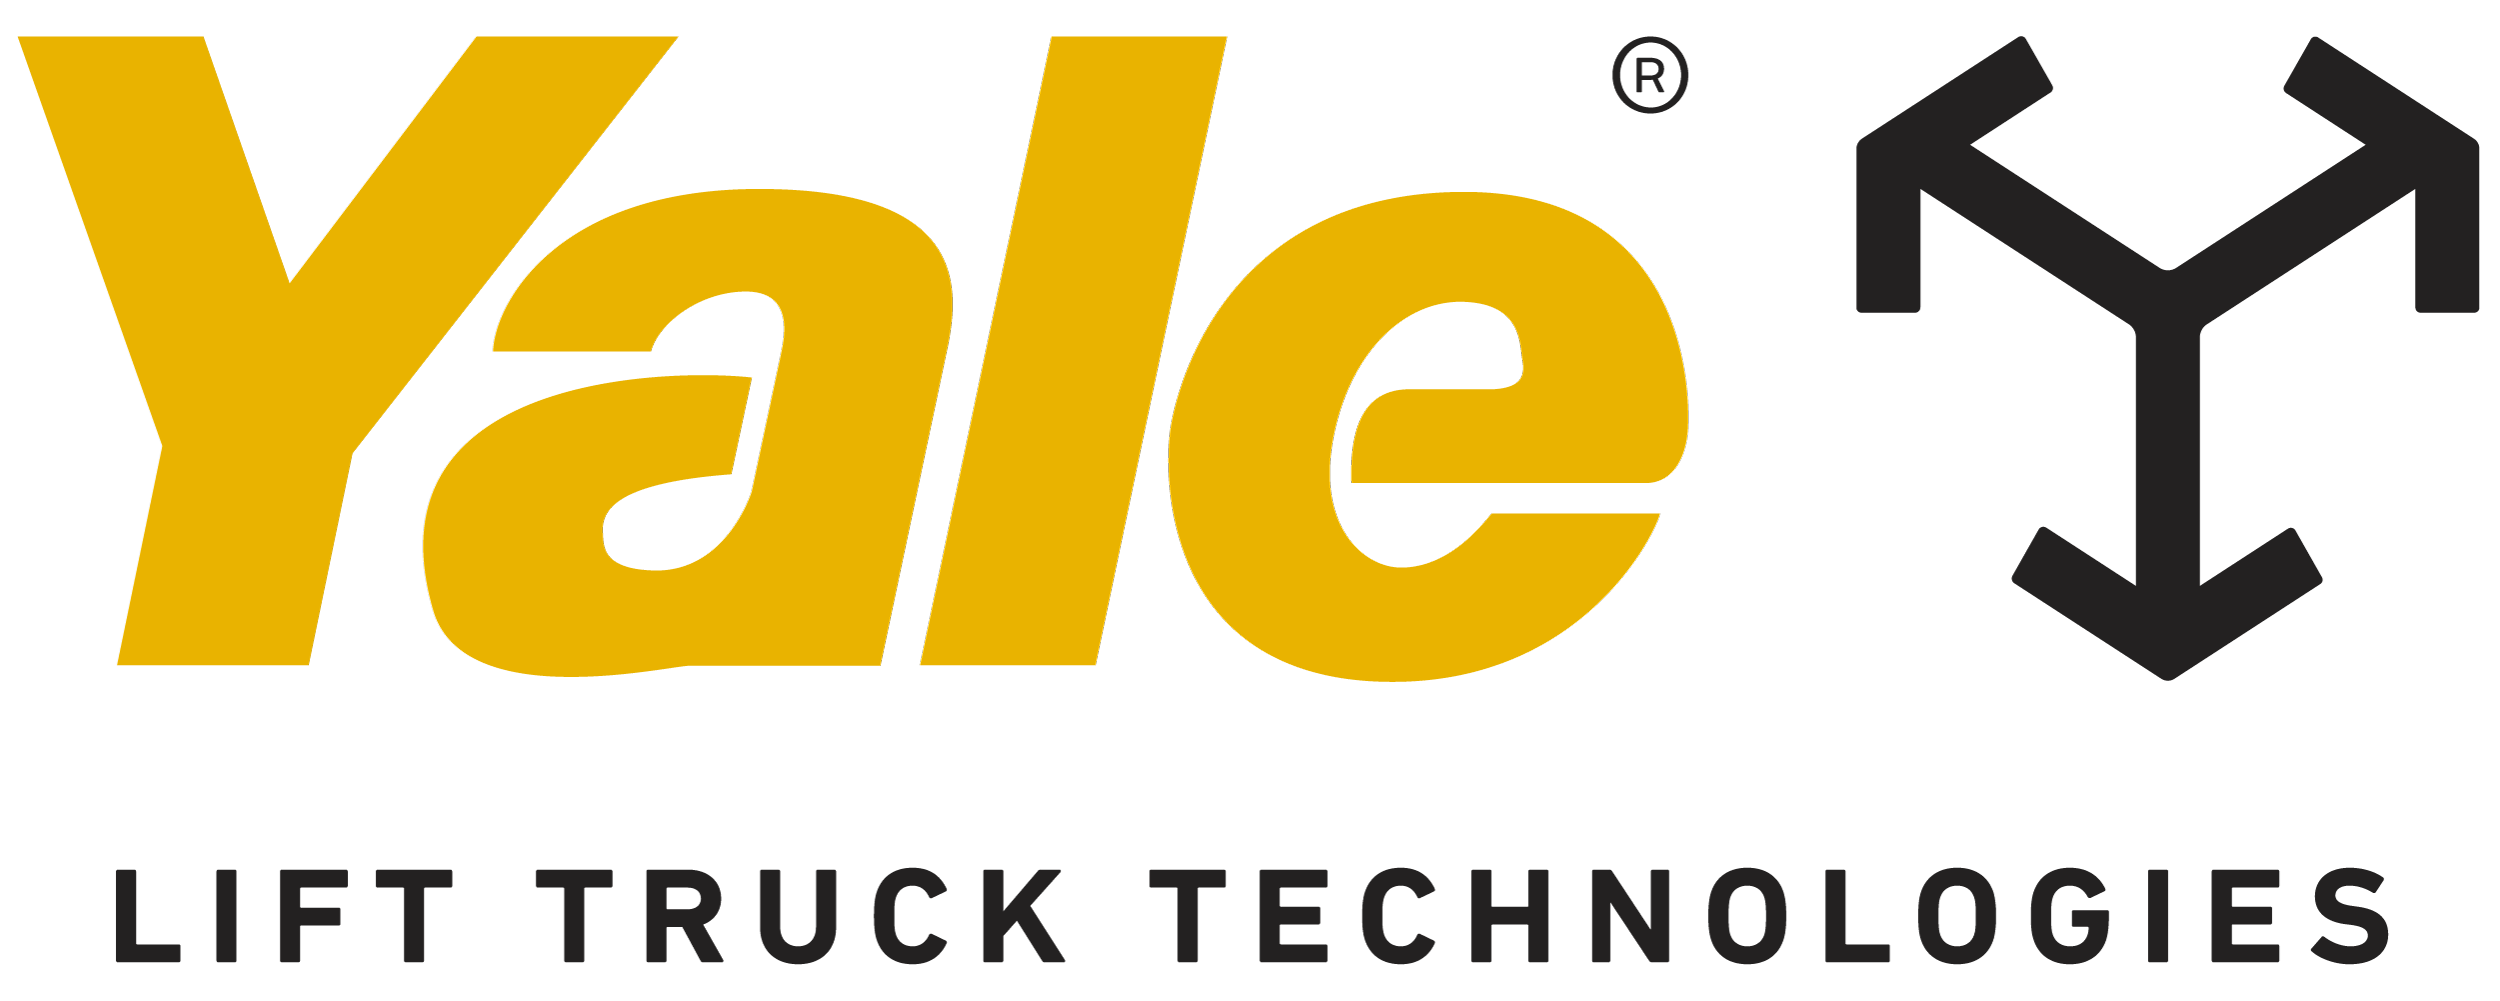 Yale Logo new 1